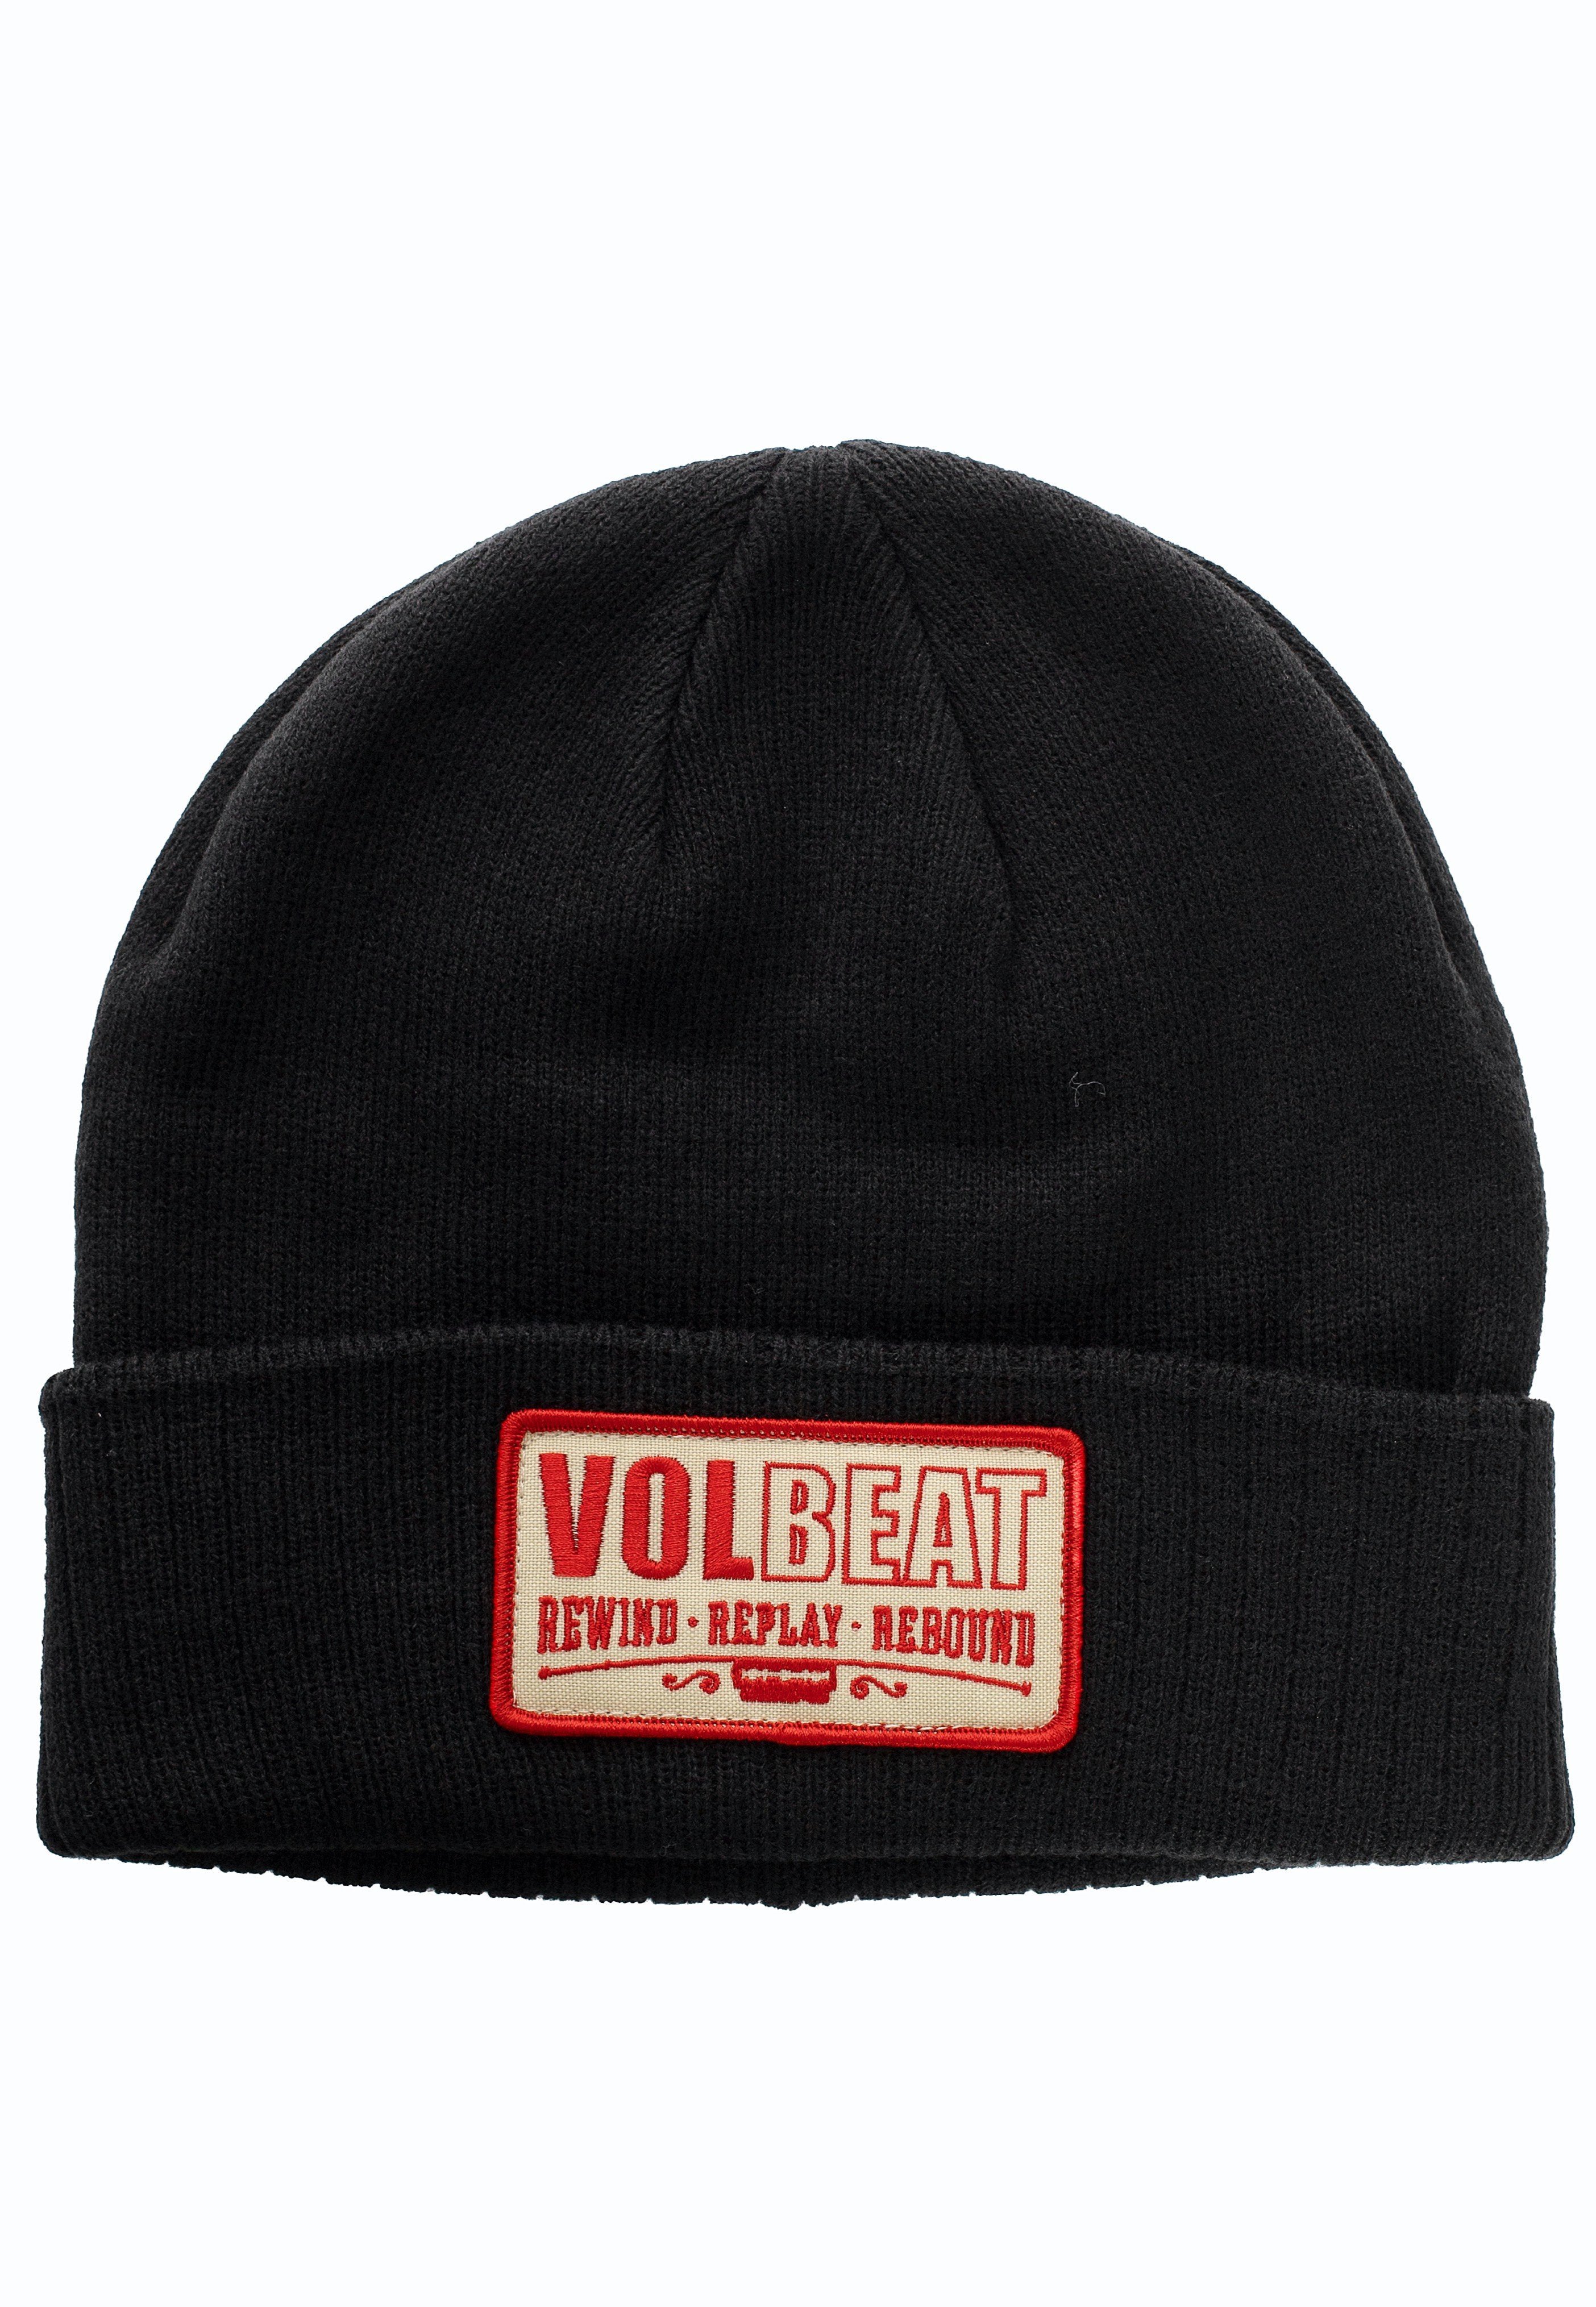 Volbeat - Rewind Replay Rebound - Beanie